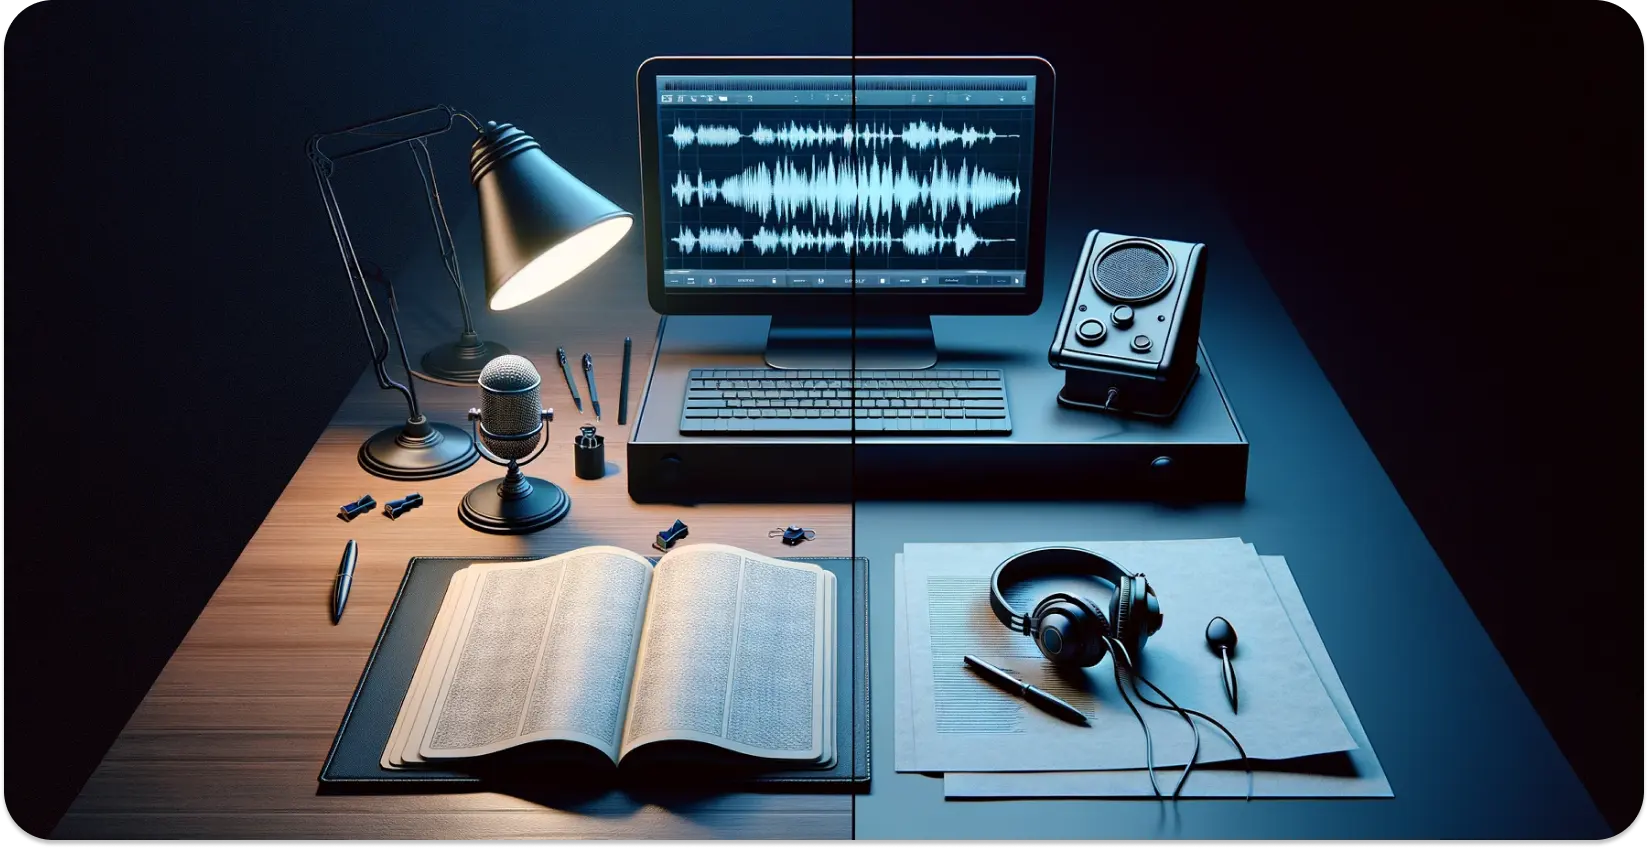 Sodobna nastavitev prepisovanja z mikrofonom, odprto knjigo in valovno obliko na zaslonu monitorja.